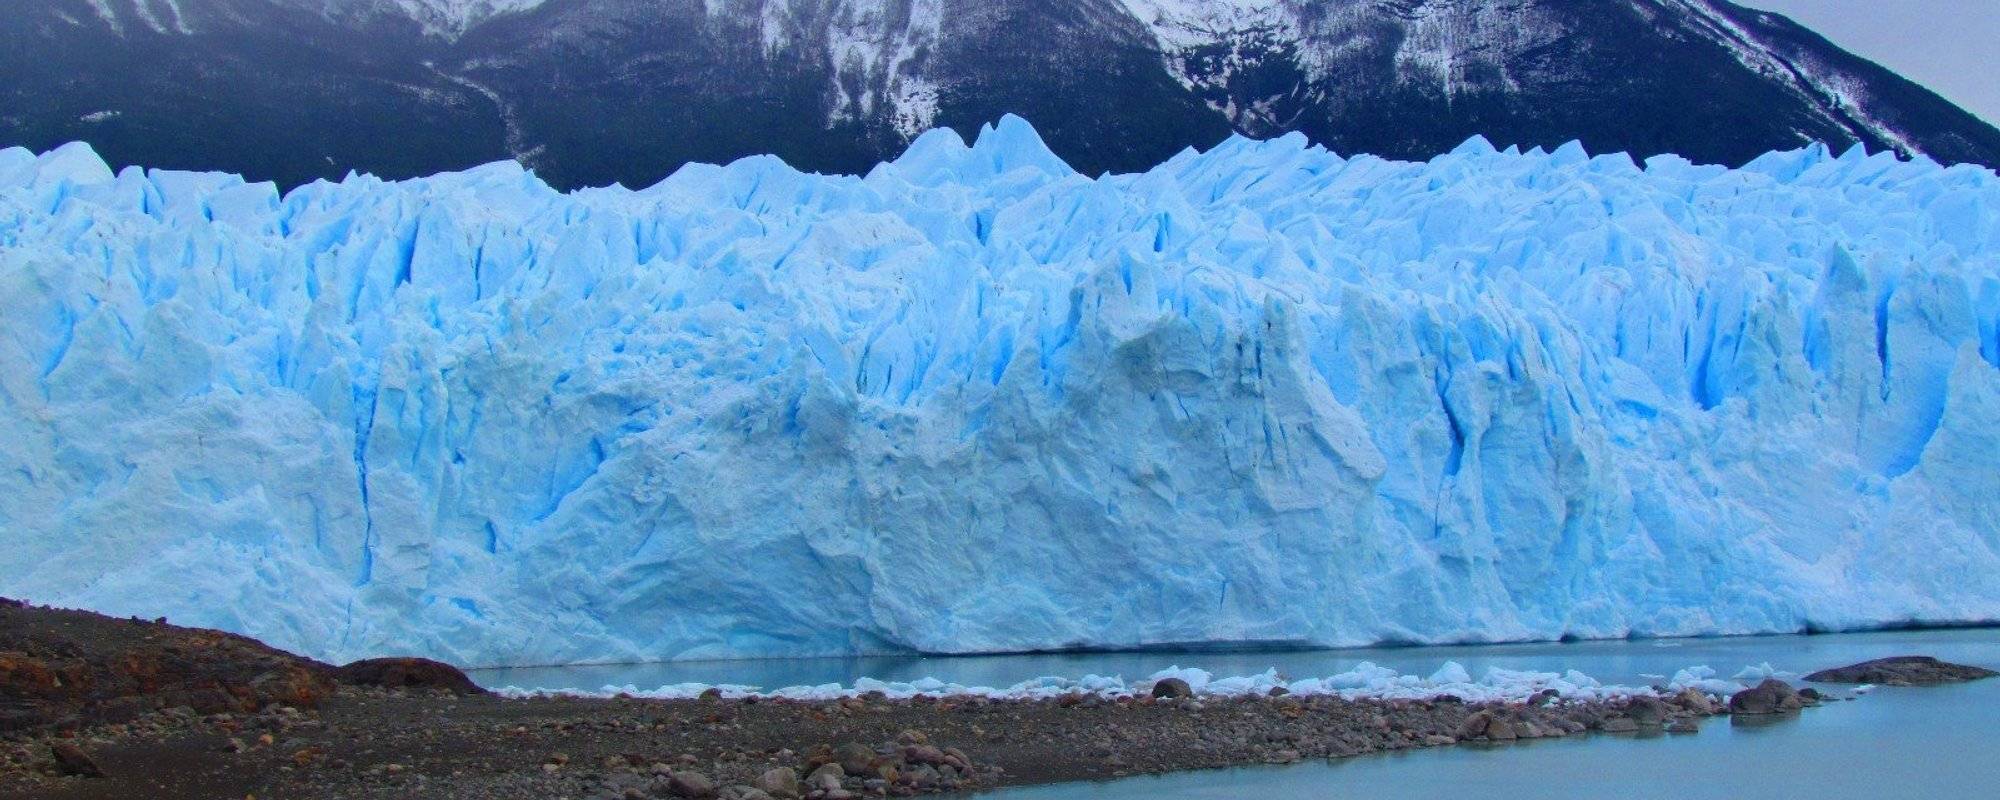 Perito Moreno Glacier, Santa Cruz-Argentina